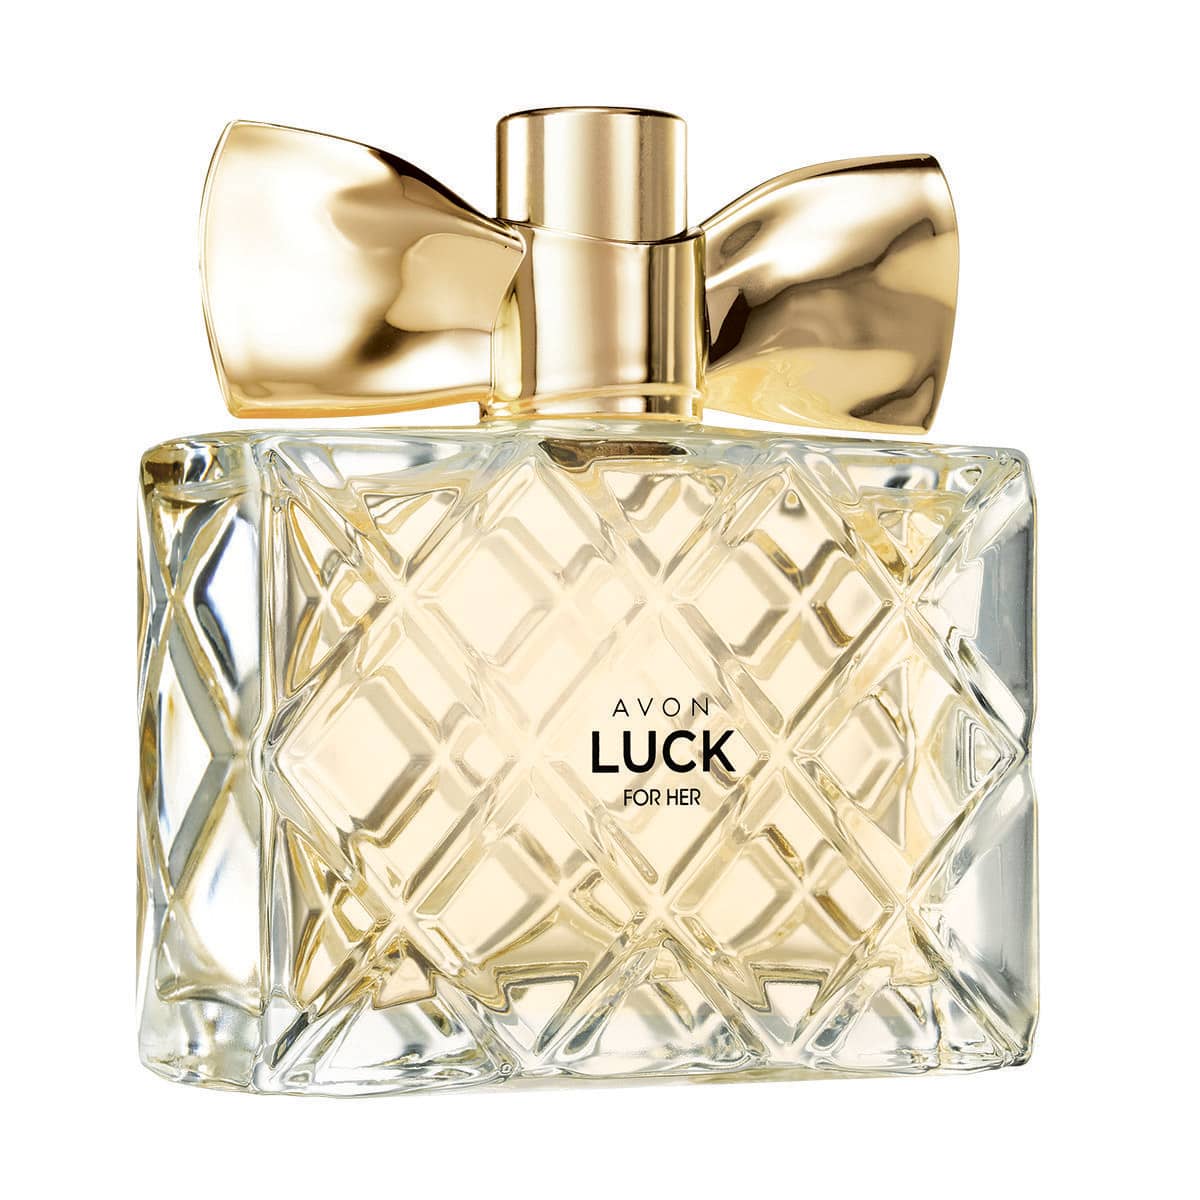 Avon Luck Eau de Parfum pour Elle 50ml